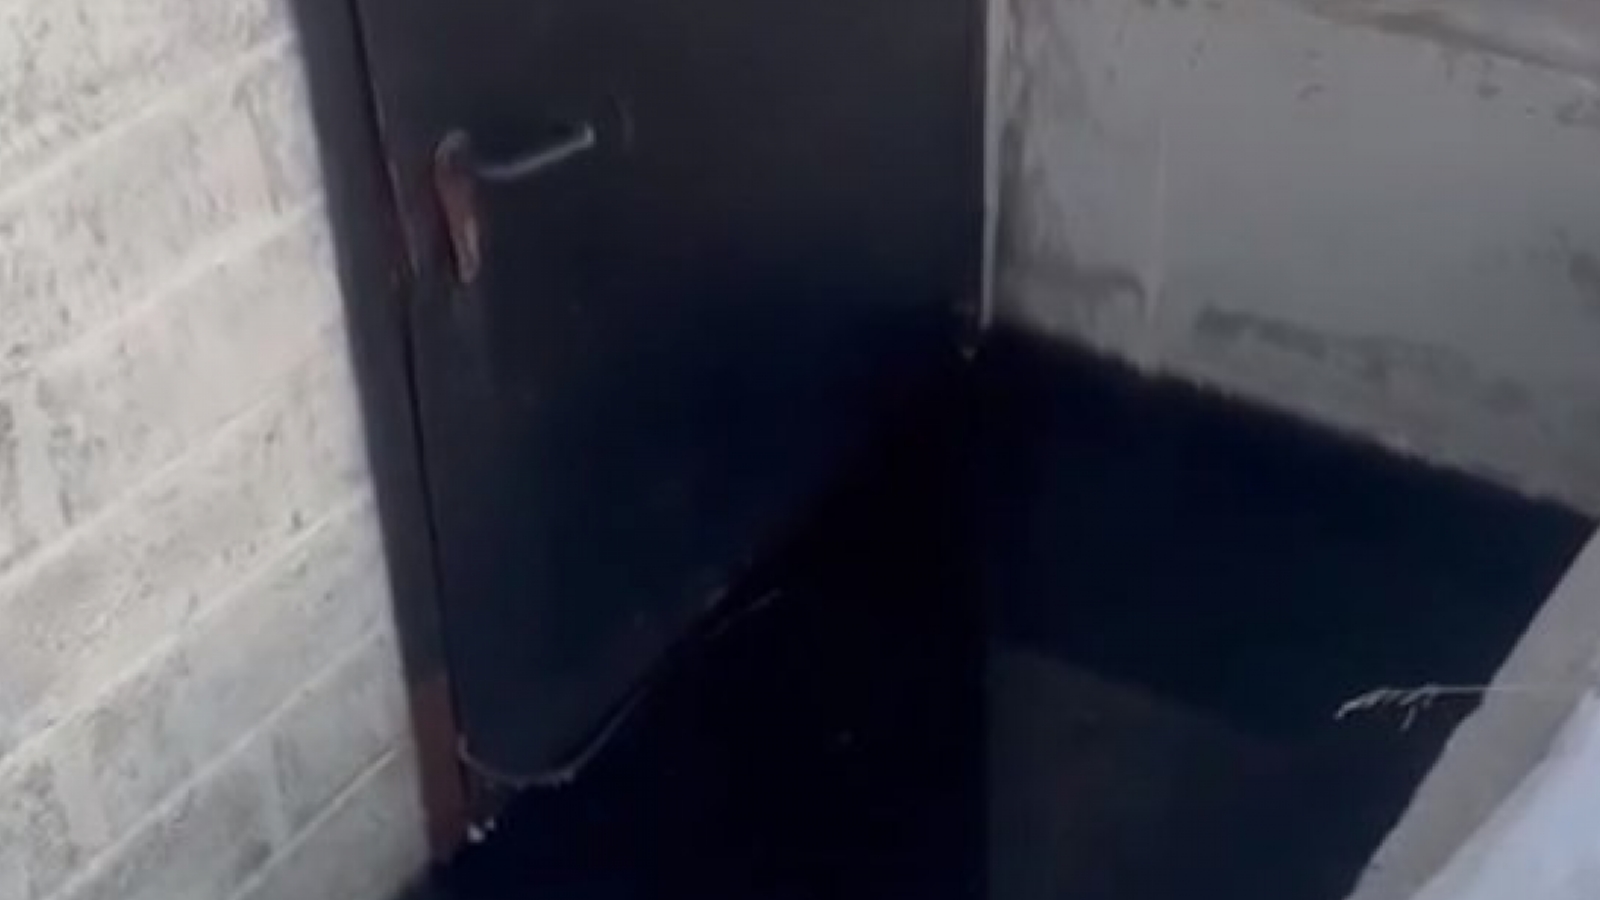 В Заполярном затопило подвал жилого дома [видео]